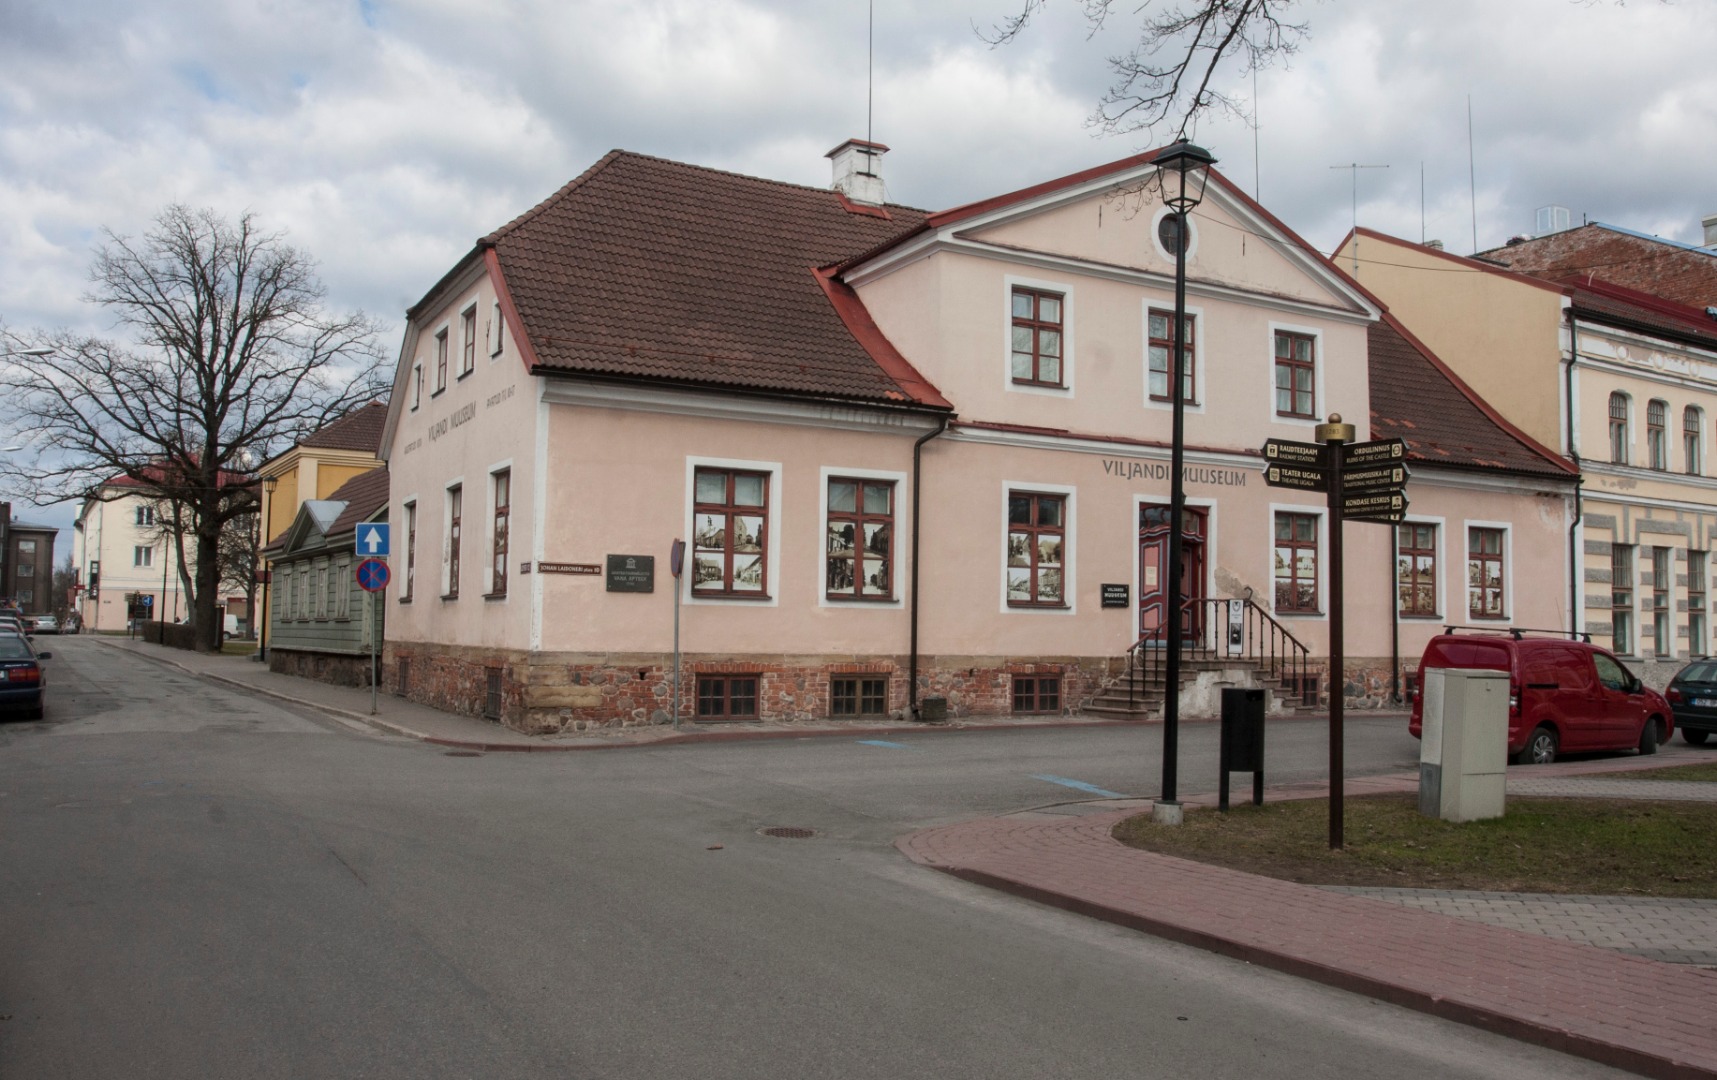 foto albumis, Viljandi, Lossi tn Turuplatsi kohal, G.H Jürgens'i apteek, u 1925, foto J. Riet rephoto